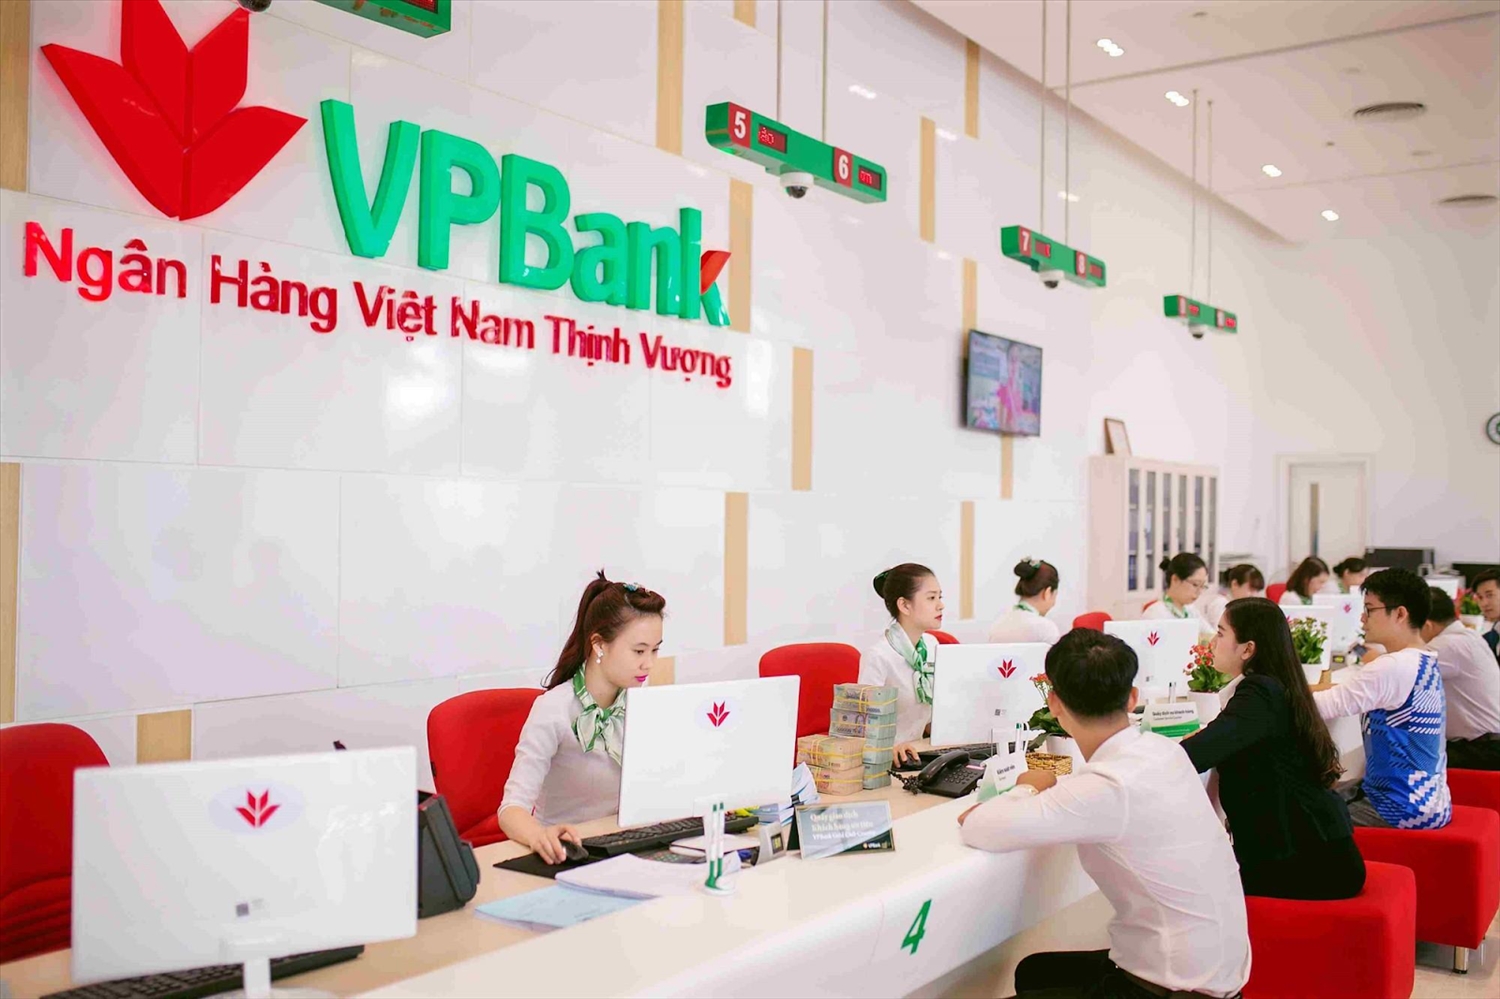 Ngân hàng VPBank triển khai nhiều chương trình ưu đãi dành cho khách hàng dịp cuối năm. 